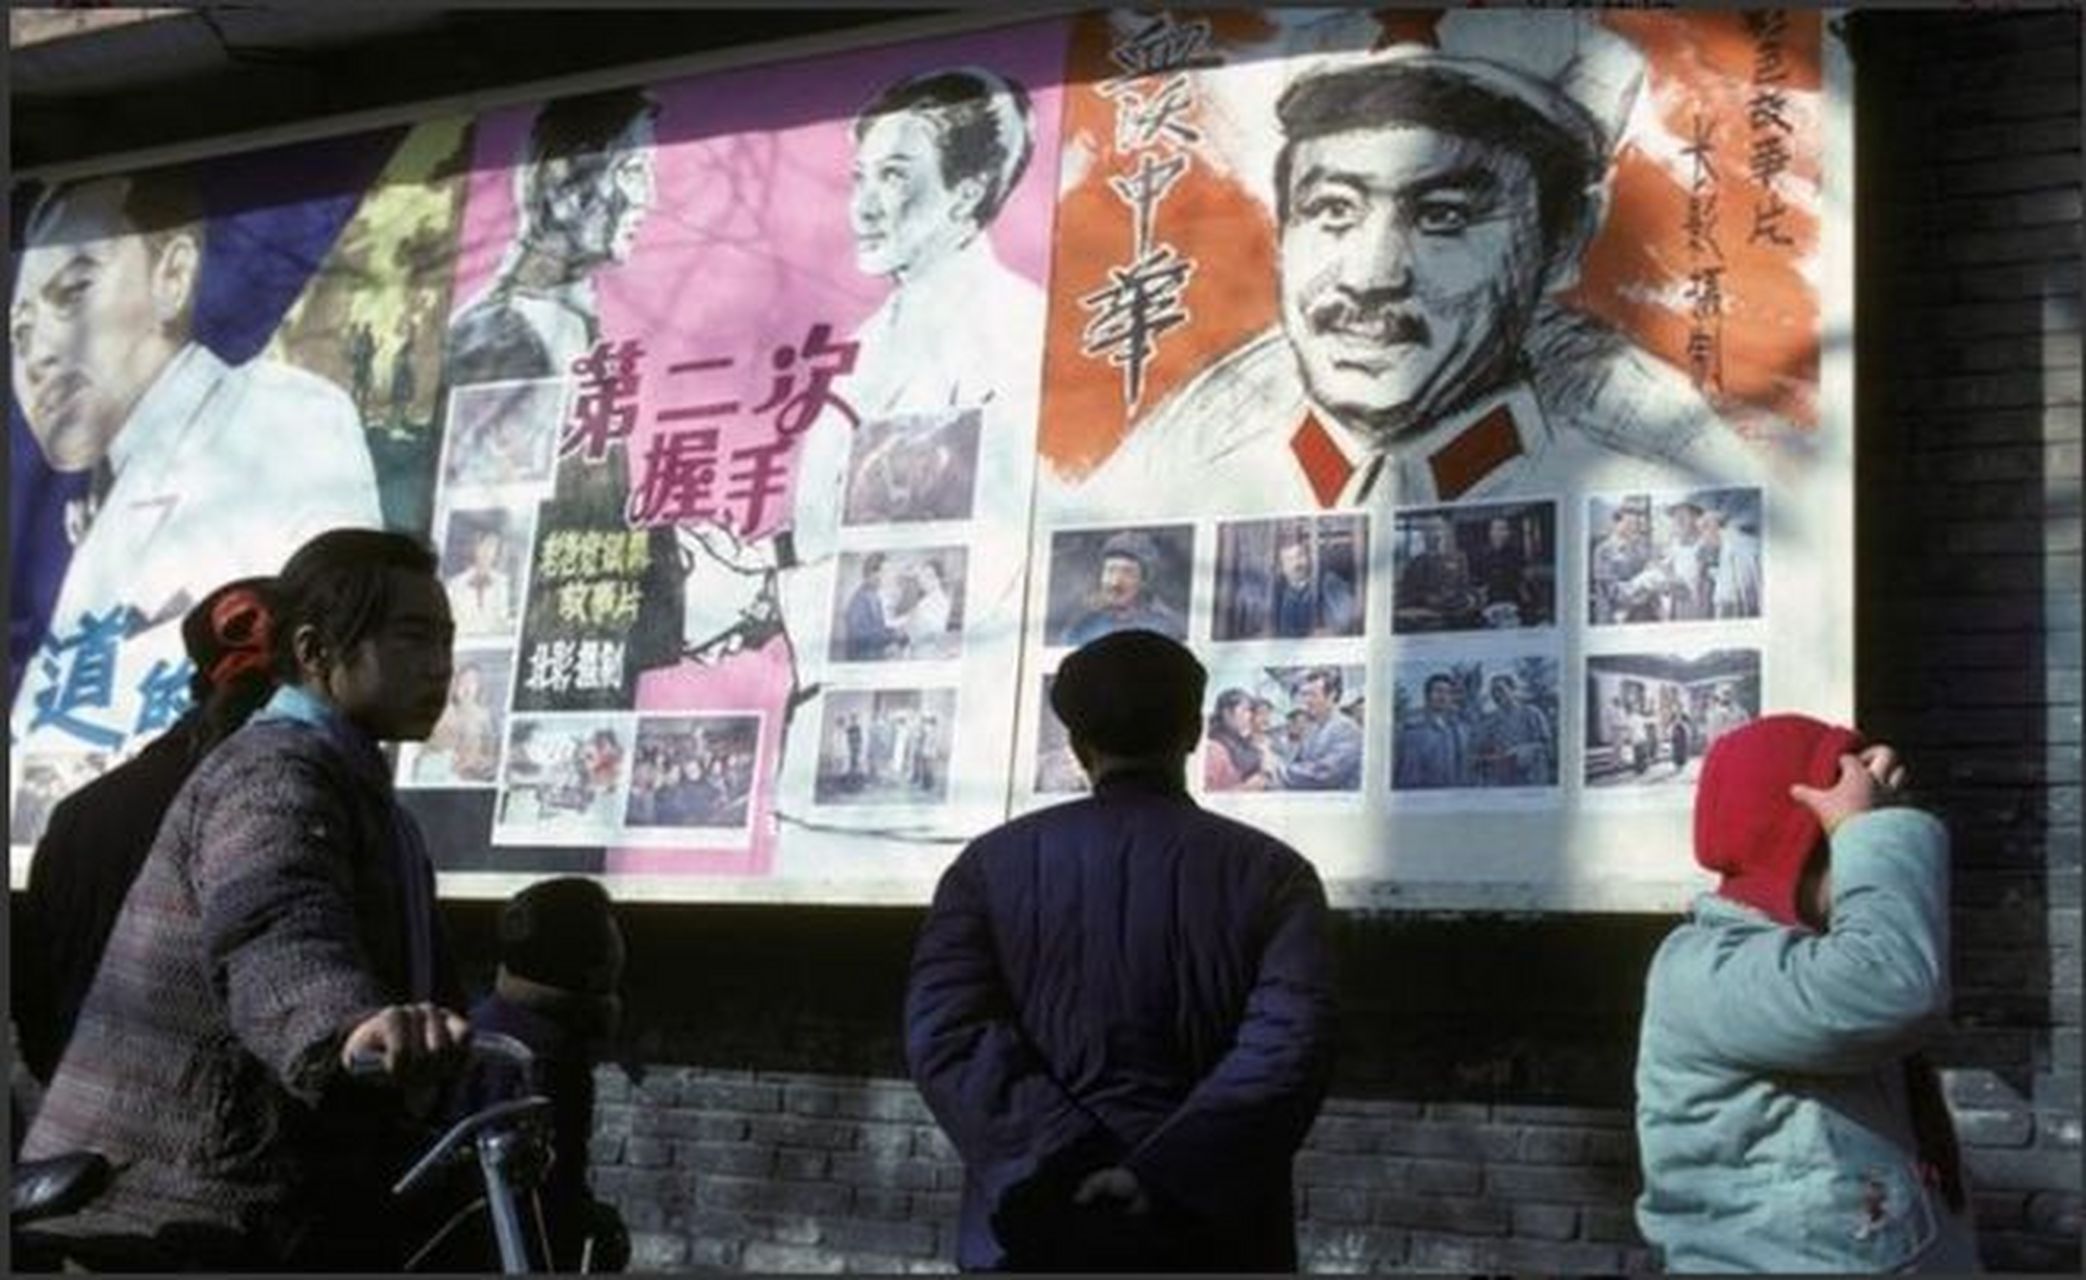 1981年,在北京的宣传栏上,可以清晰地看到两部影片